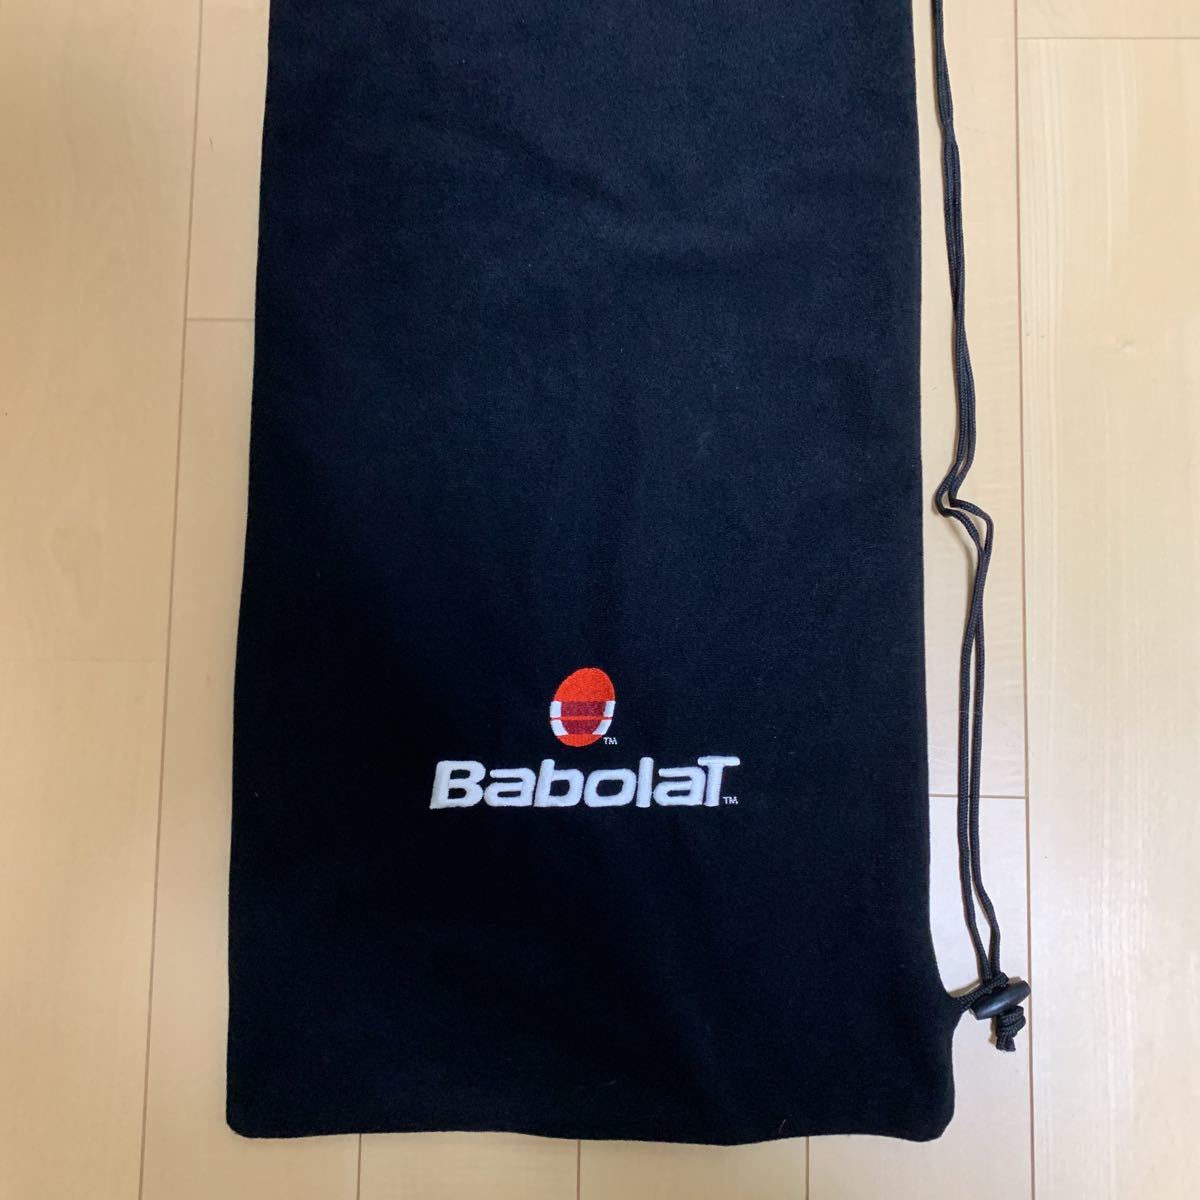  Babolat ракетка кейс старый Logo б/у 